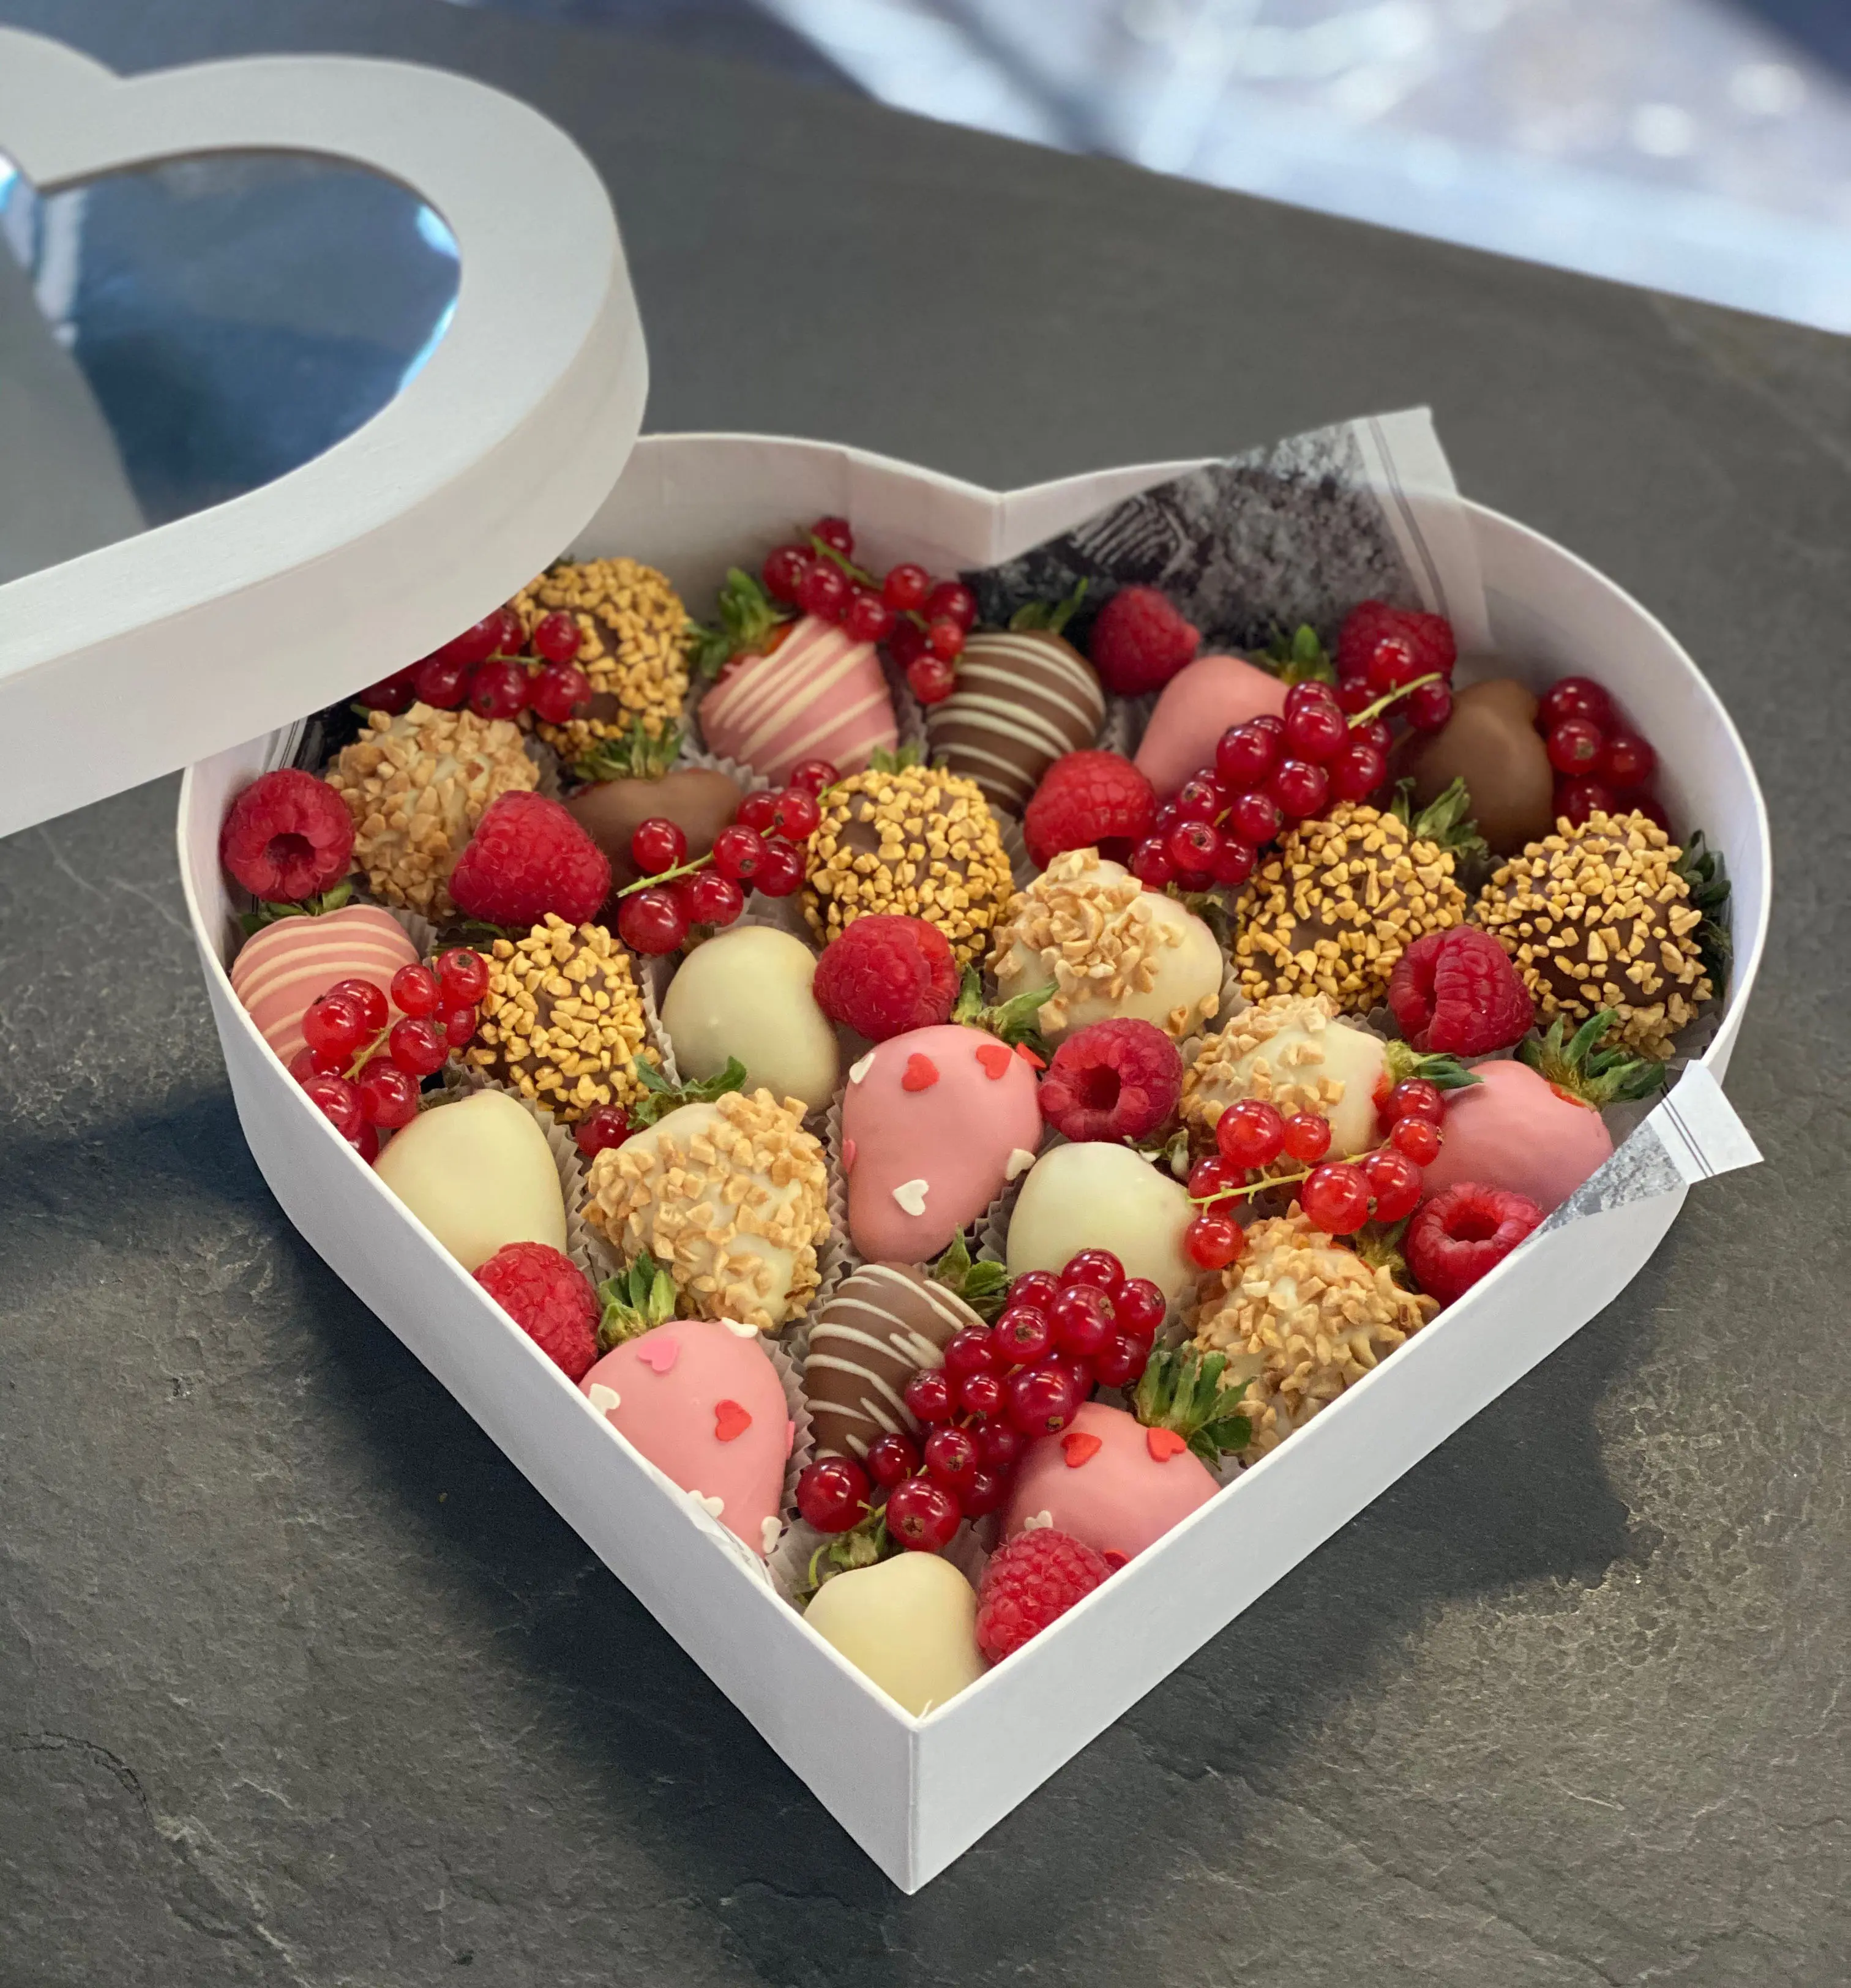 Подарочный набор из ягод в бельгийском шоколаде "Сердце"5 100 руб.. Фото N3